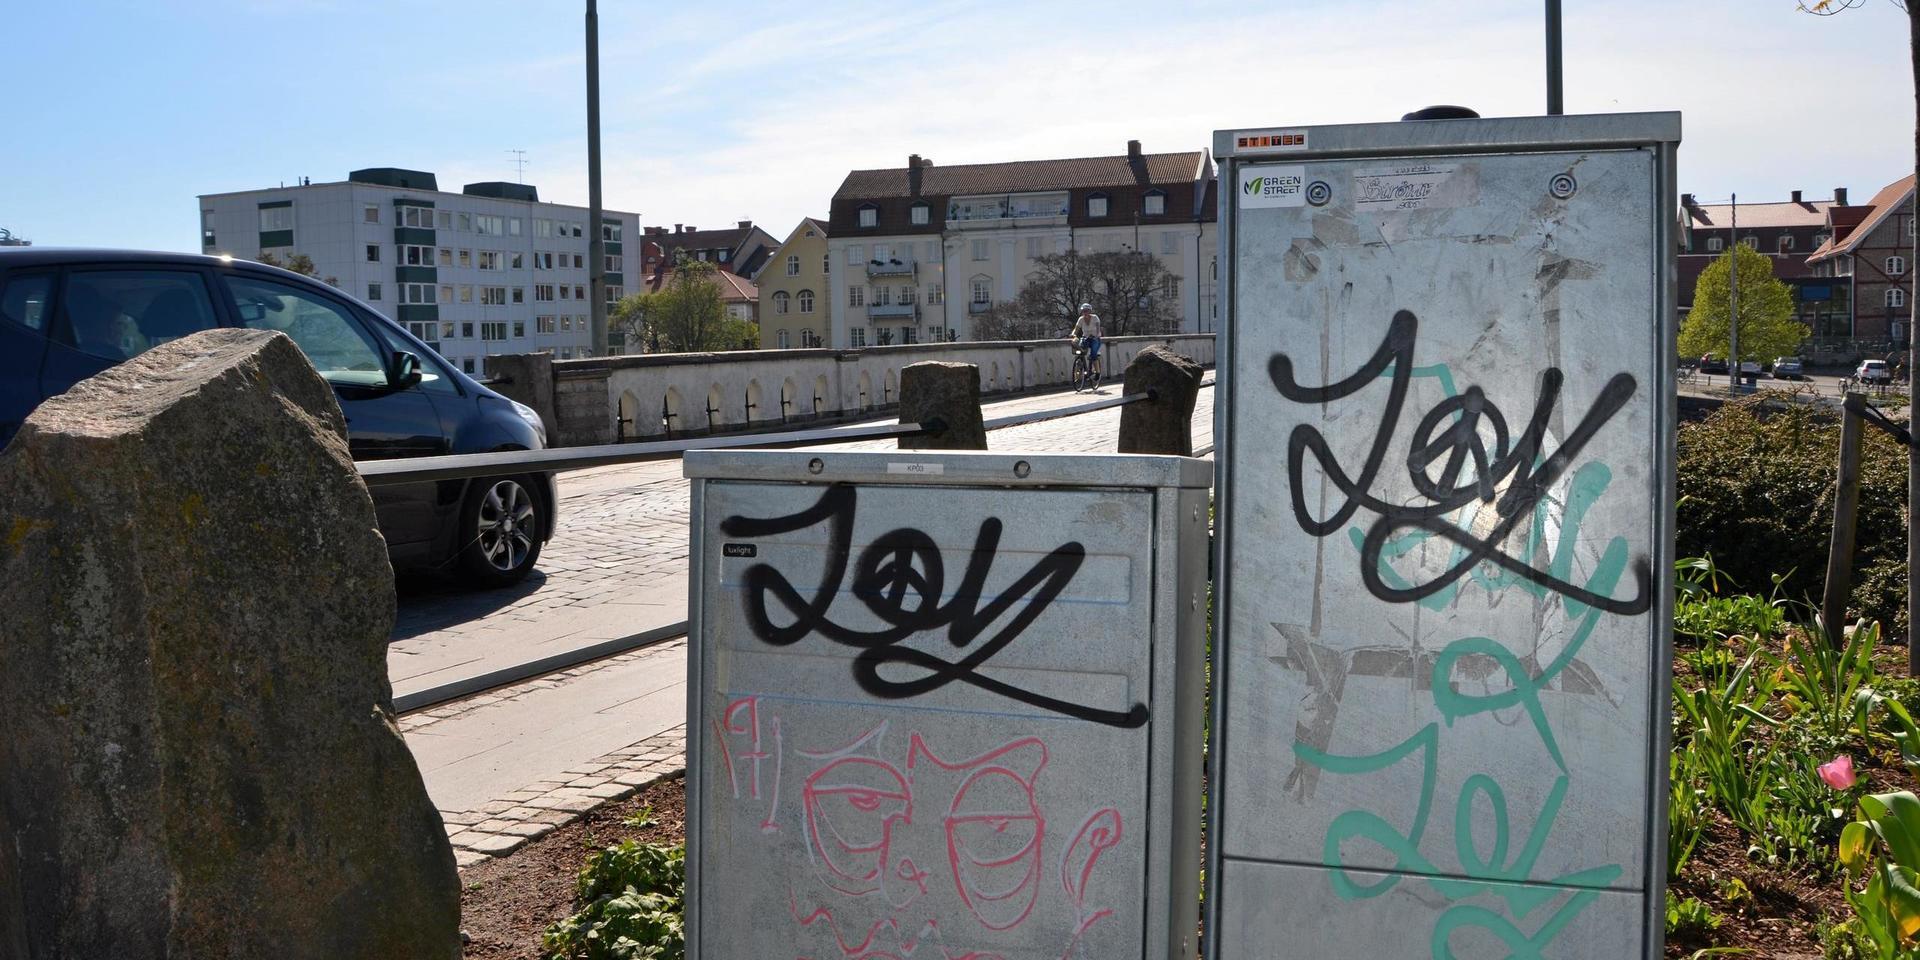 Förra våren fick Falkenbergs kommun lägga mycket pengar på klottersanering efter flera fall av ”Joy” på olika ställen i stan. Under helgen som gick har nytt klotter upptäckts. (Bilden är från 2019).